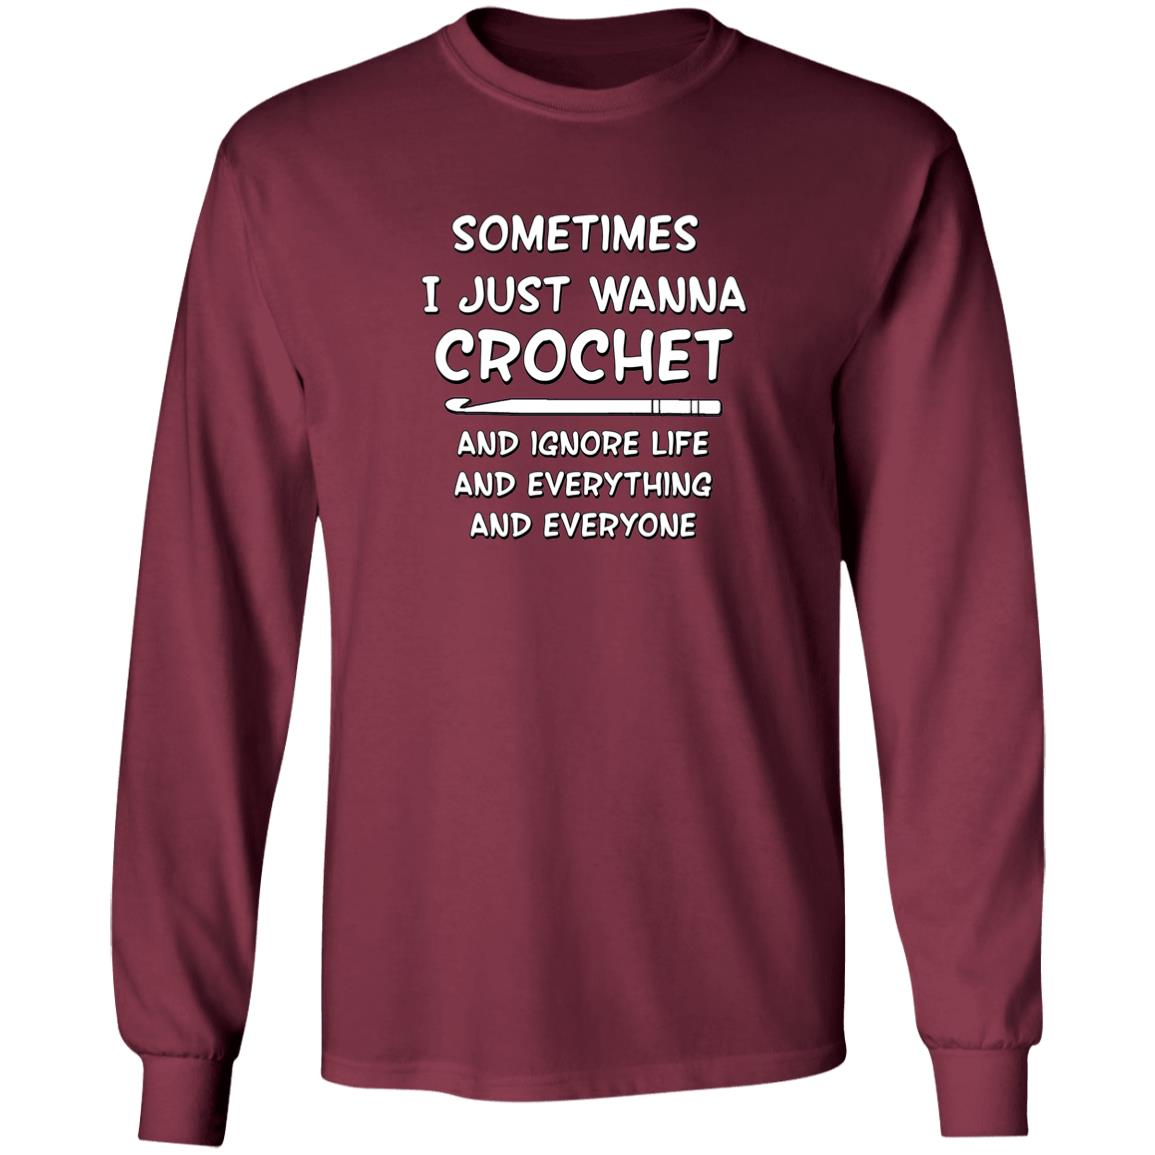 Just Wanna Crochet Long Sleeve T-Shirt